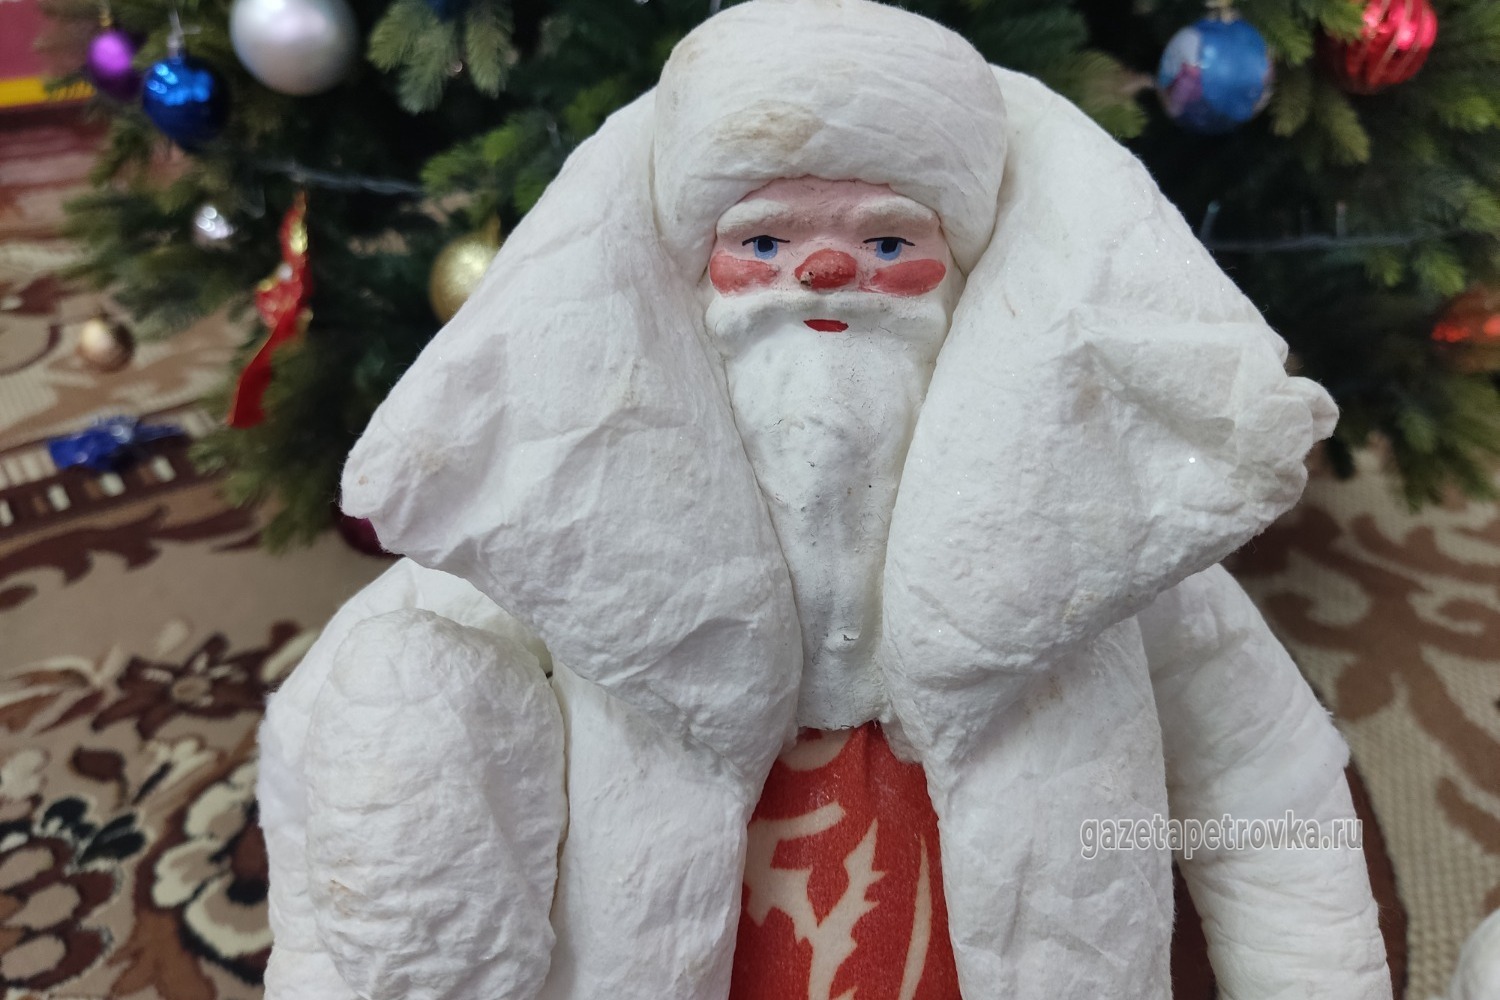 Детсадовские Дед Мороз и Снегурочка изготовлены Воронежской фабрикой игрушек